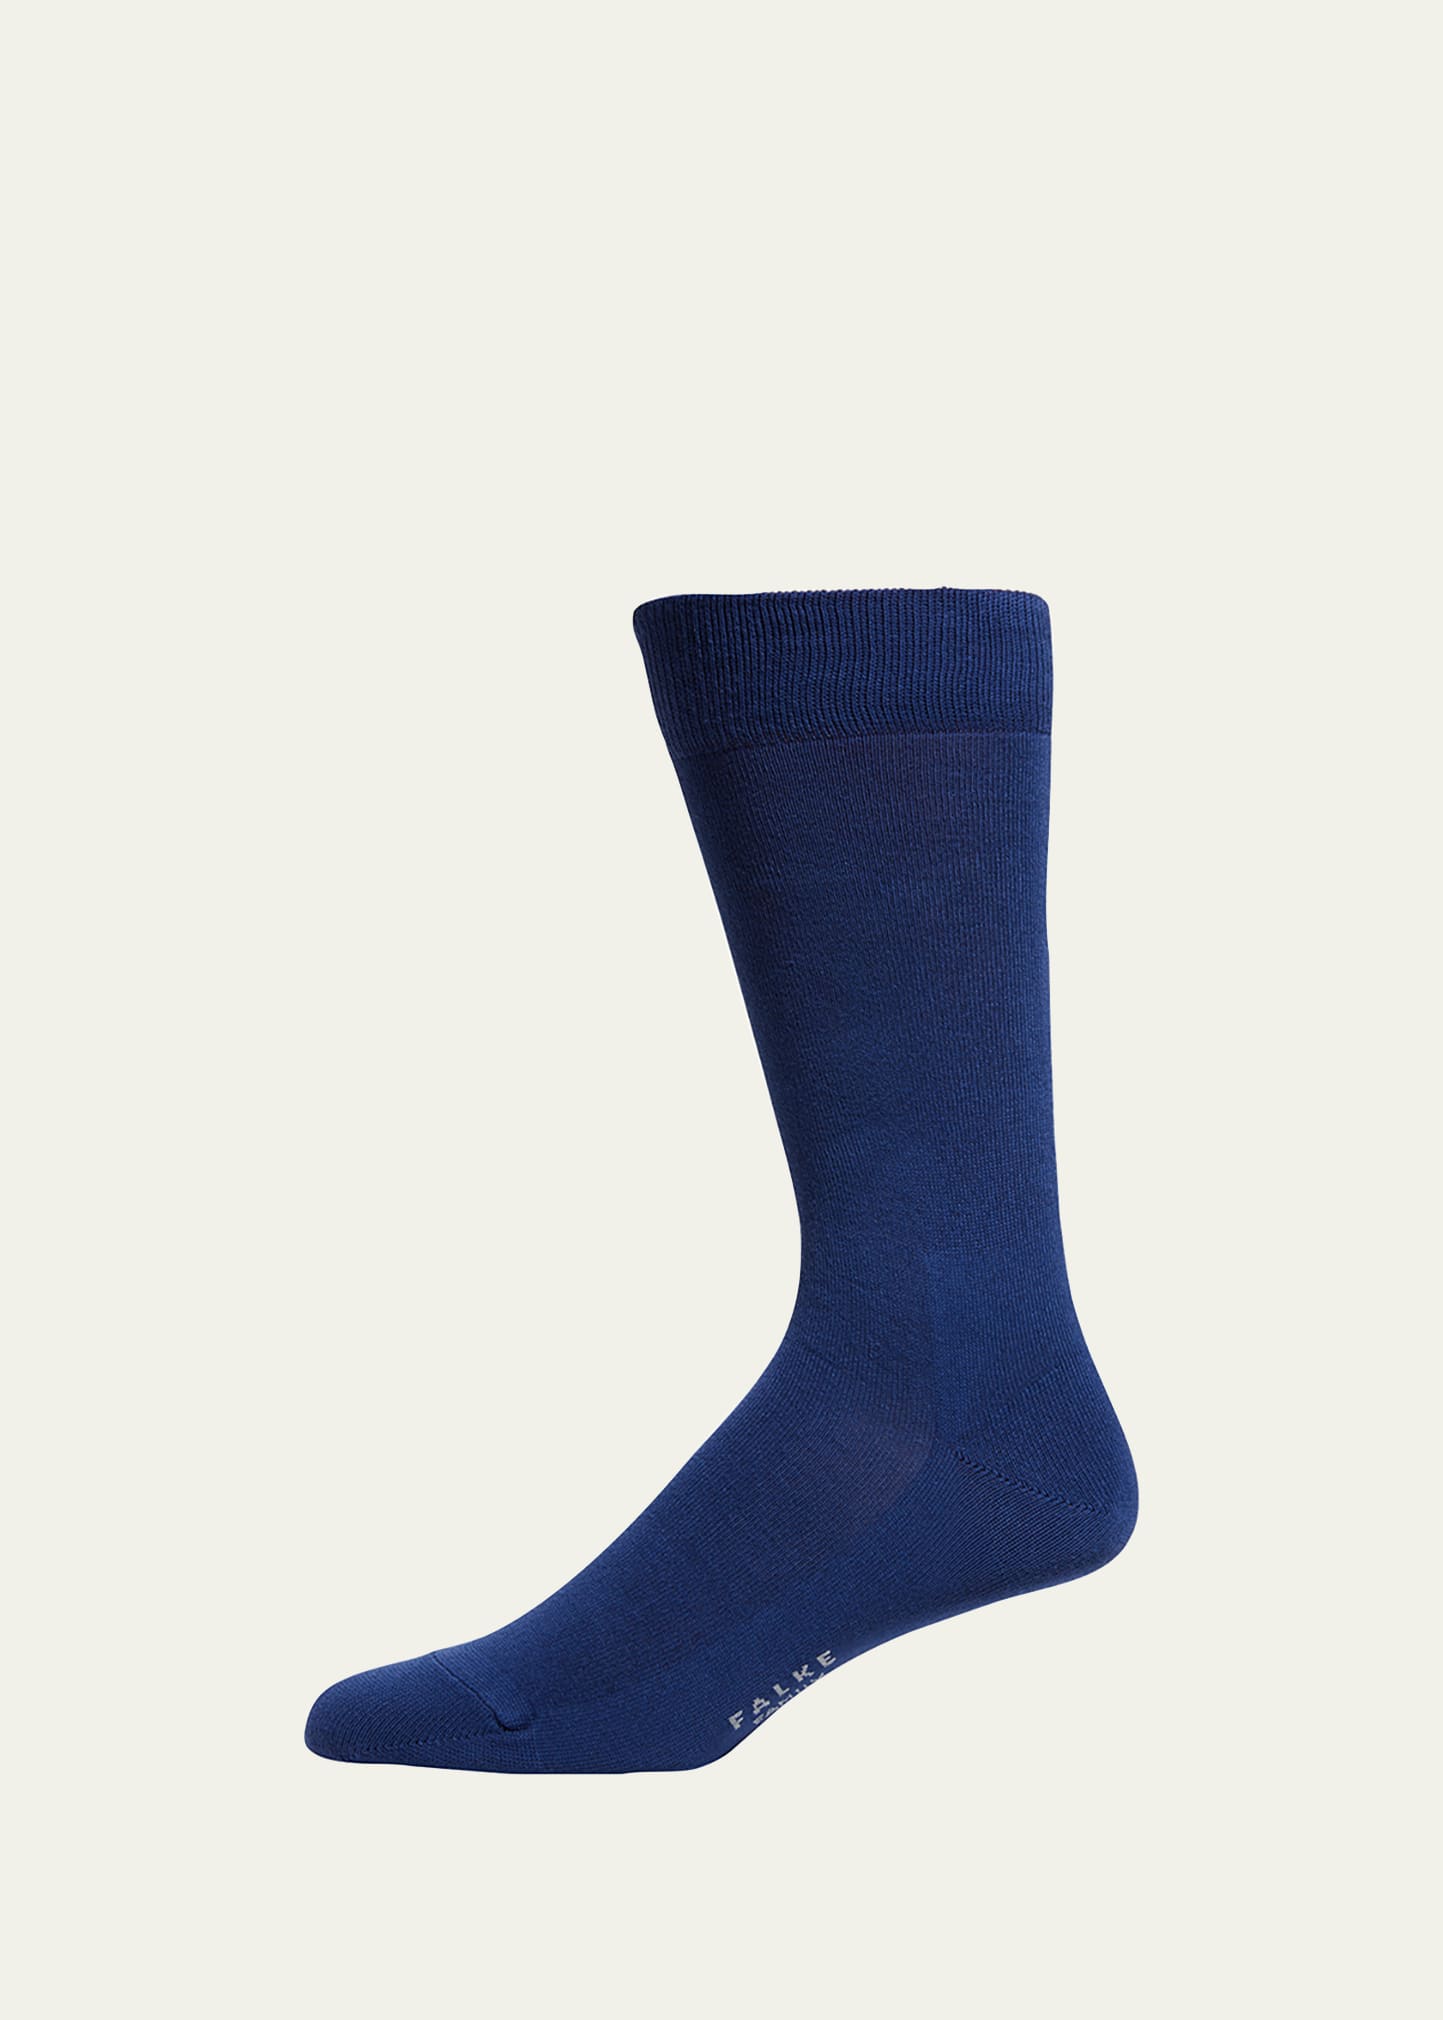 Falke Men's Family Cotton Mid-calf Socks In Deep Royal